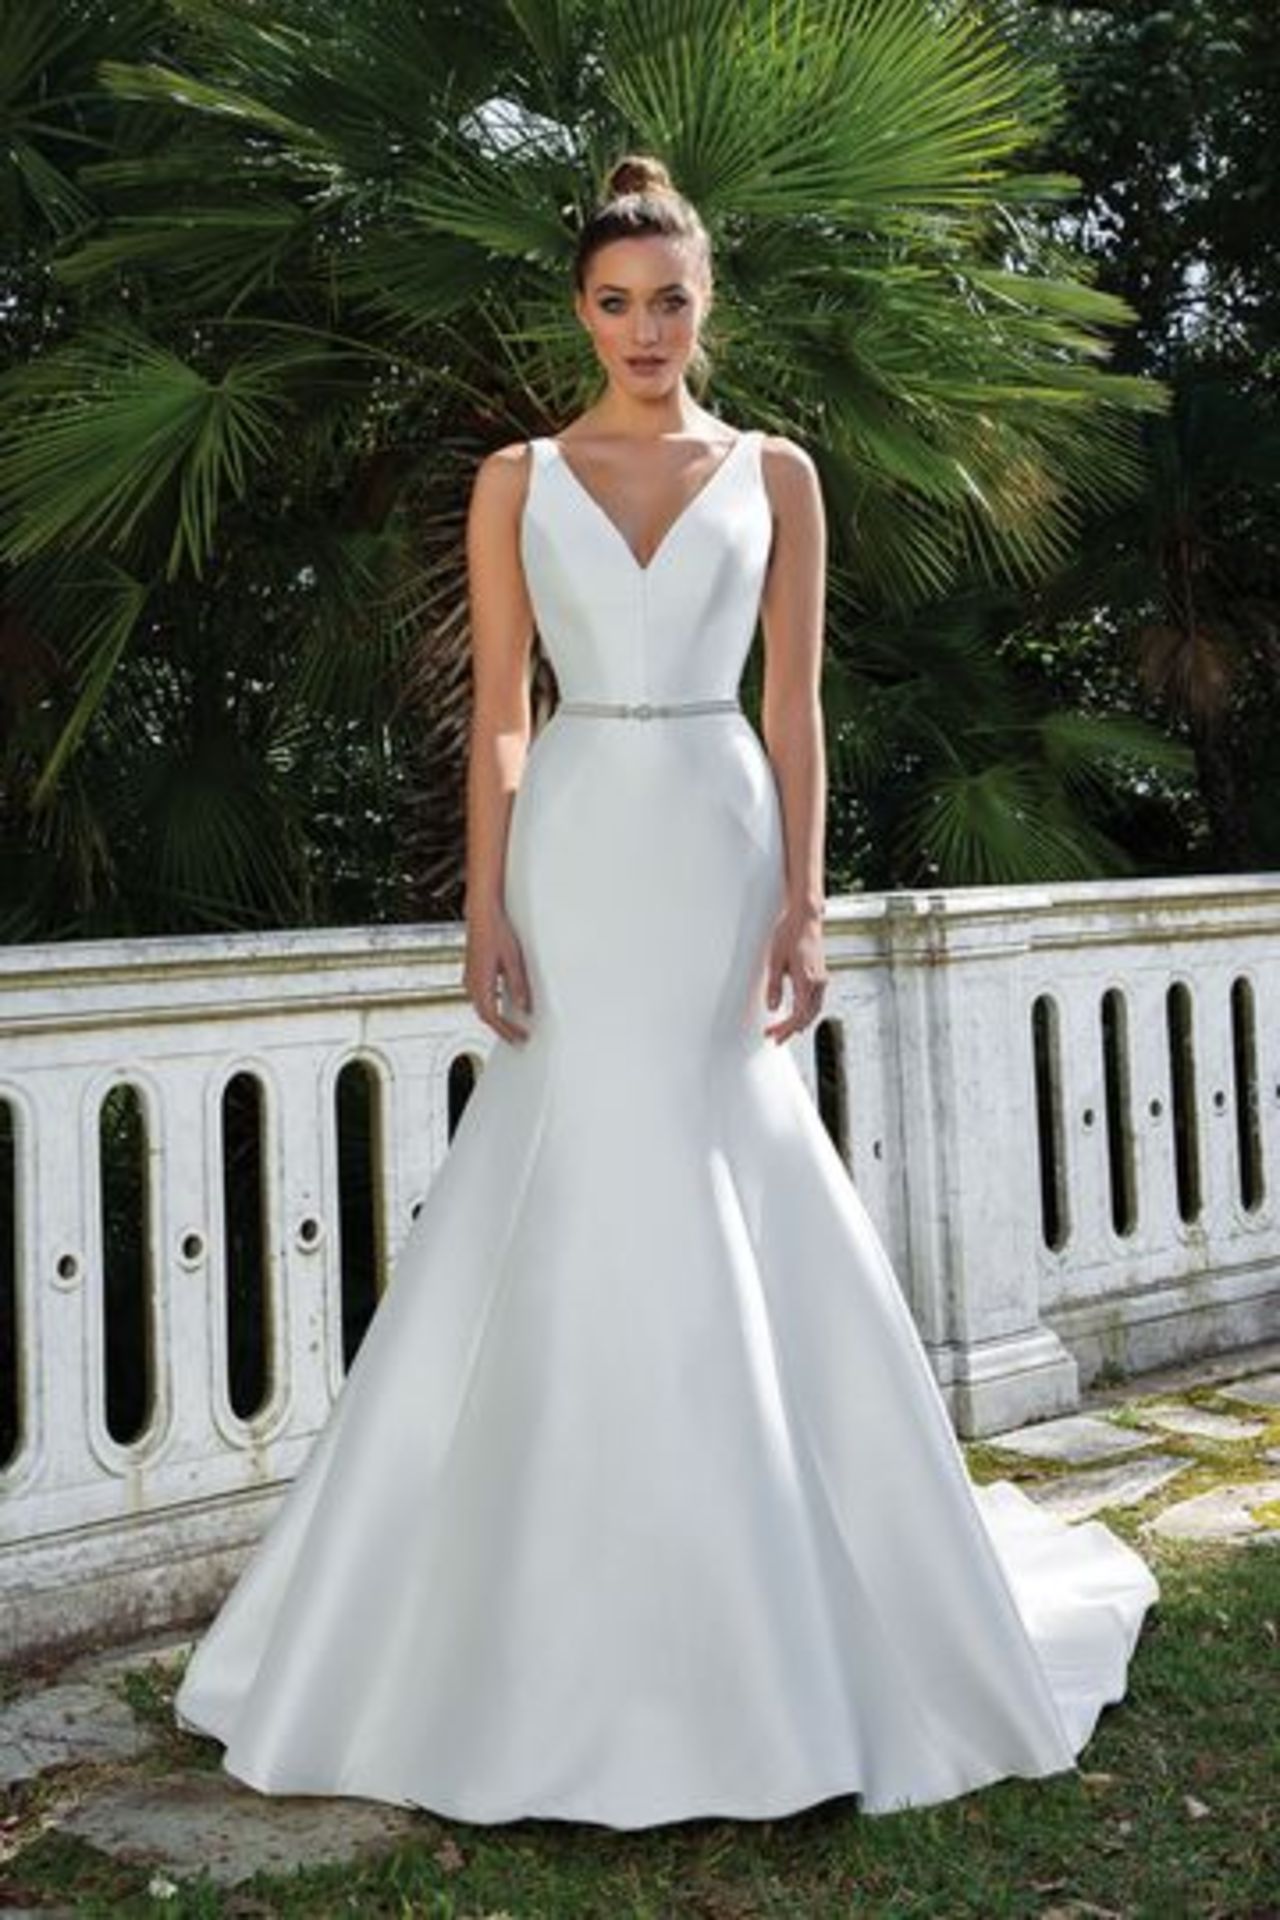 1 x Justin Alexander Designer Clean V-Neck Fit and Flare Wedding Dress - UK Size 14 - RRP £1,158 - Image 3 of 7